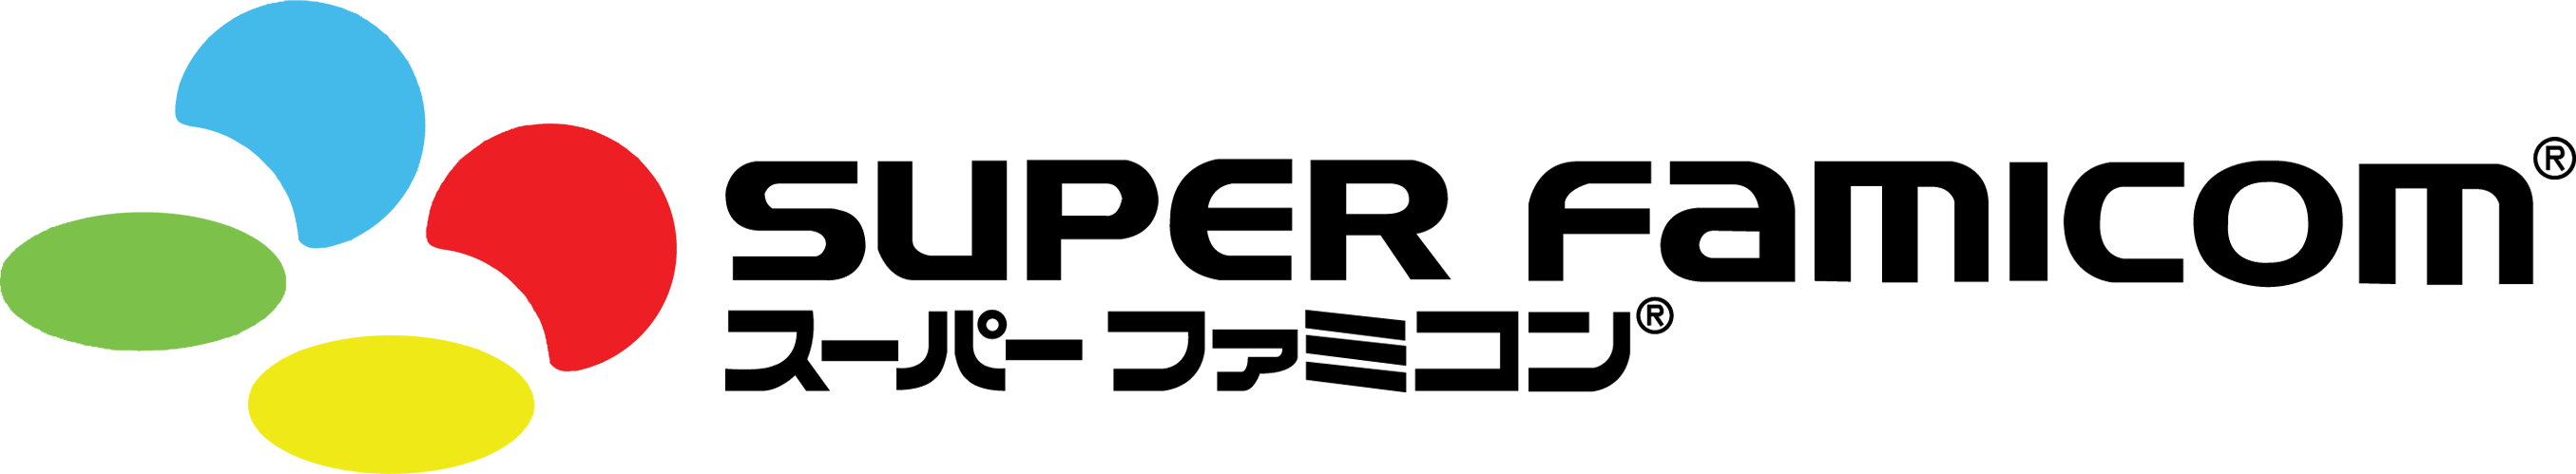 Super Nintendo Logo - Image - Super Famicom Color Logo.png | Logopedia | FANDOM powered by ...